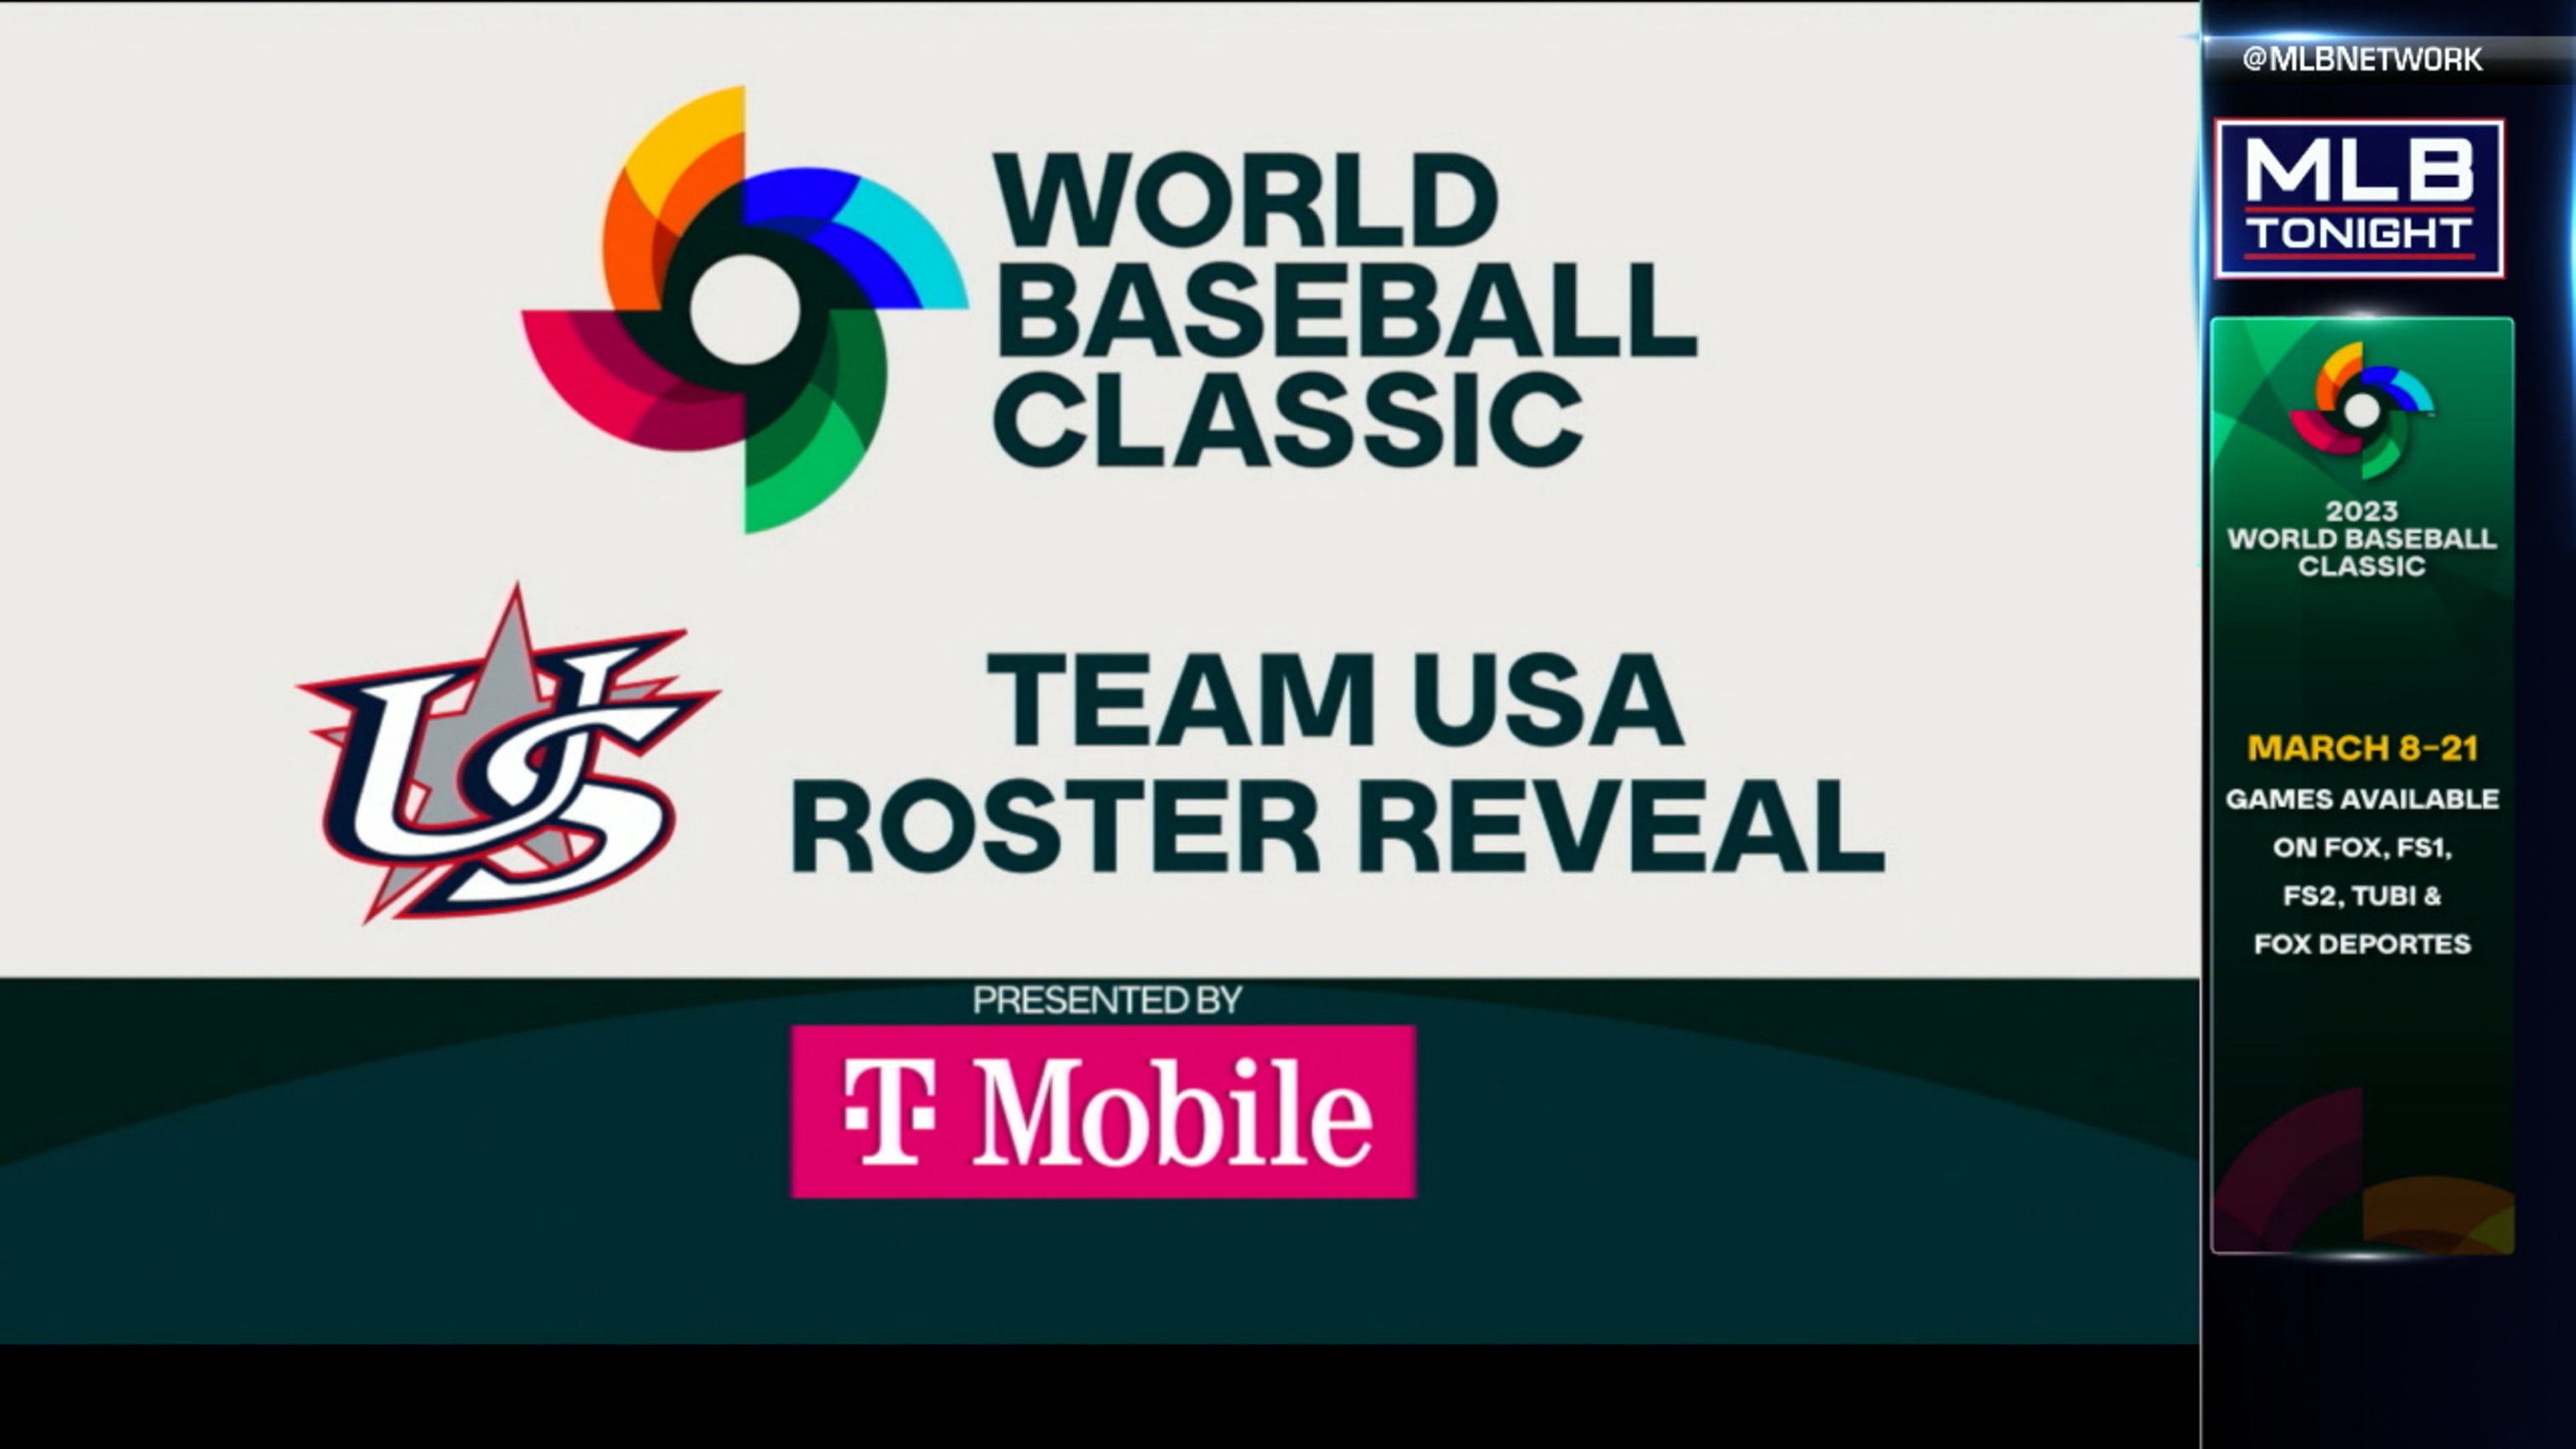 2023 World Baseball Classic: Japan team roster